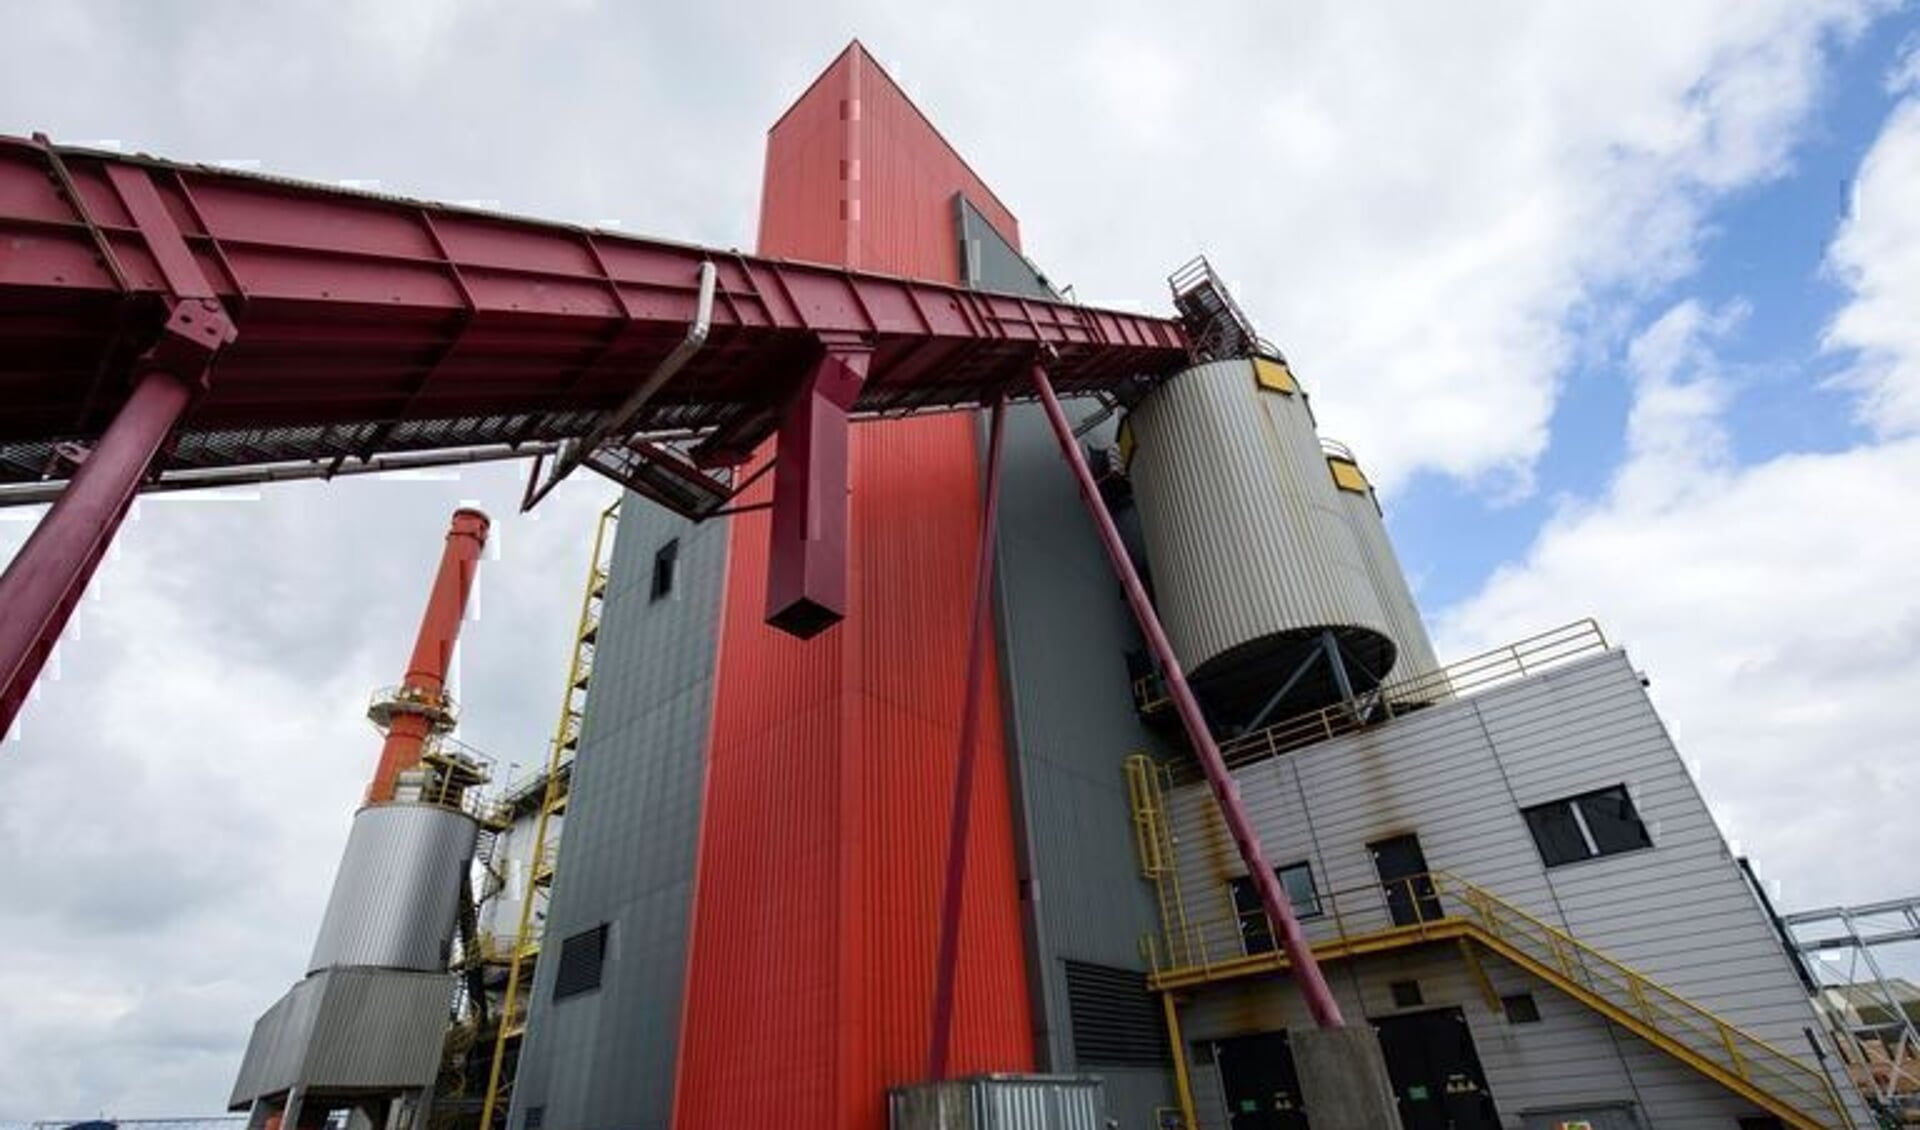 De Biomassacentrale in Katwijk.